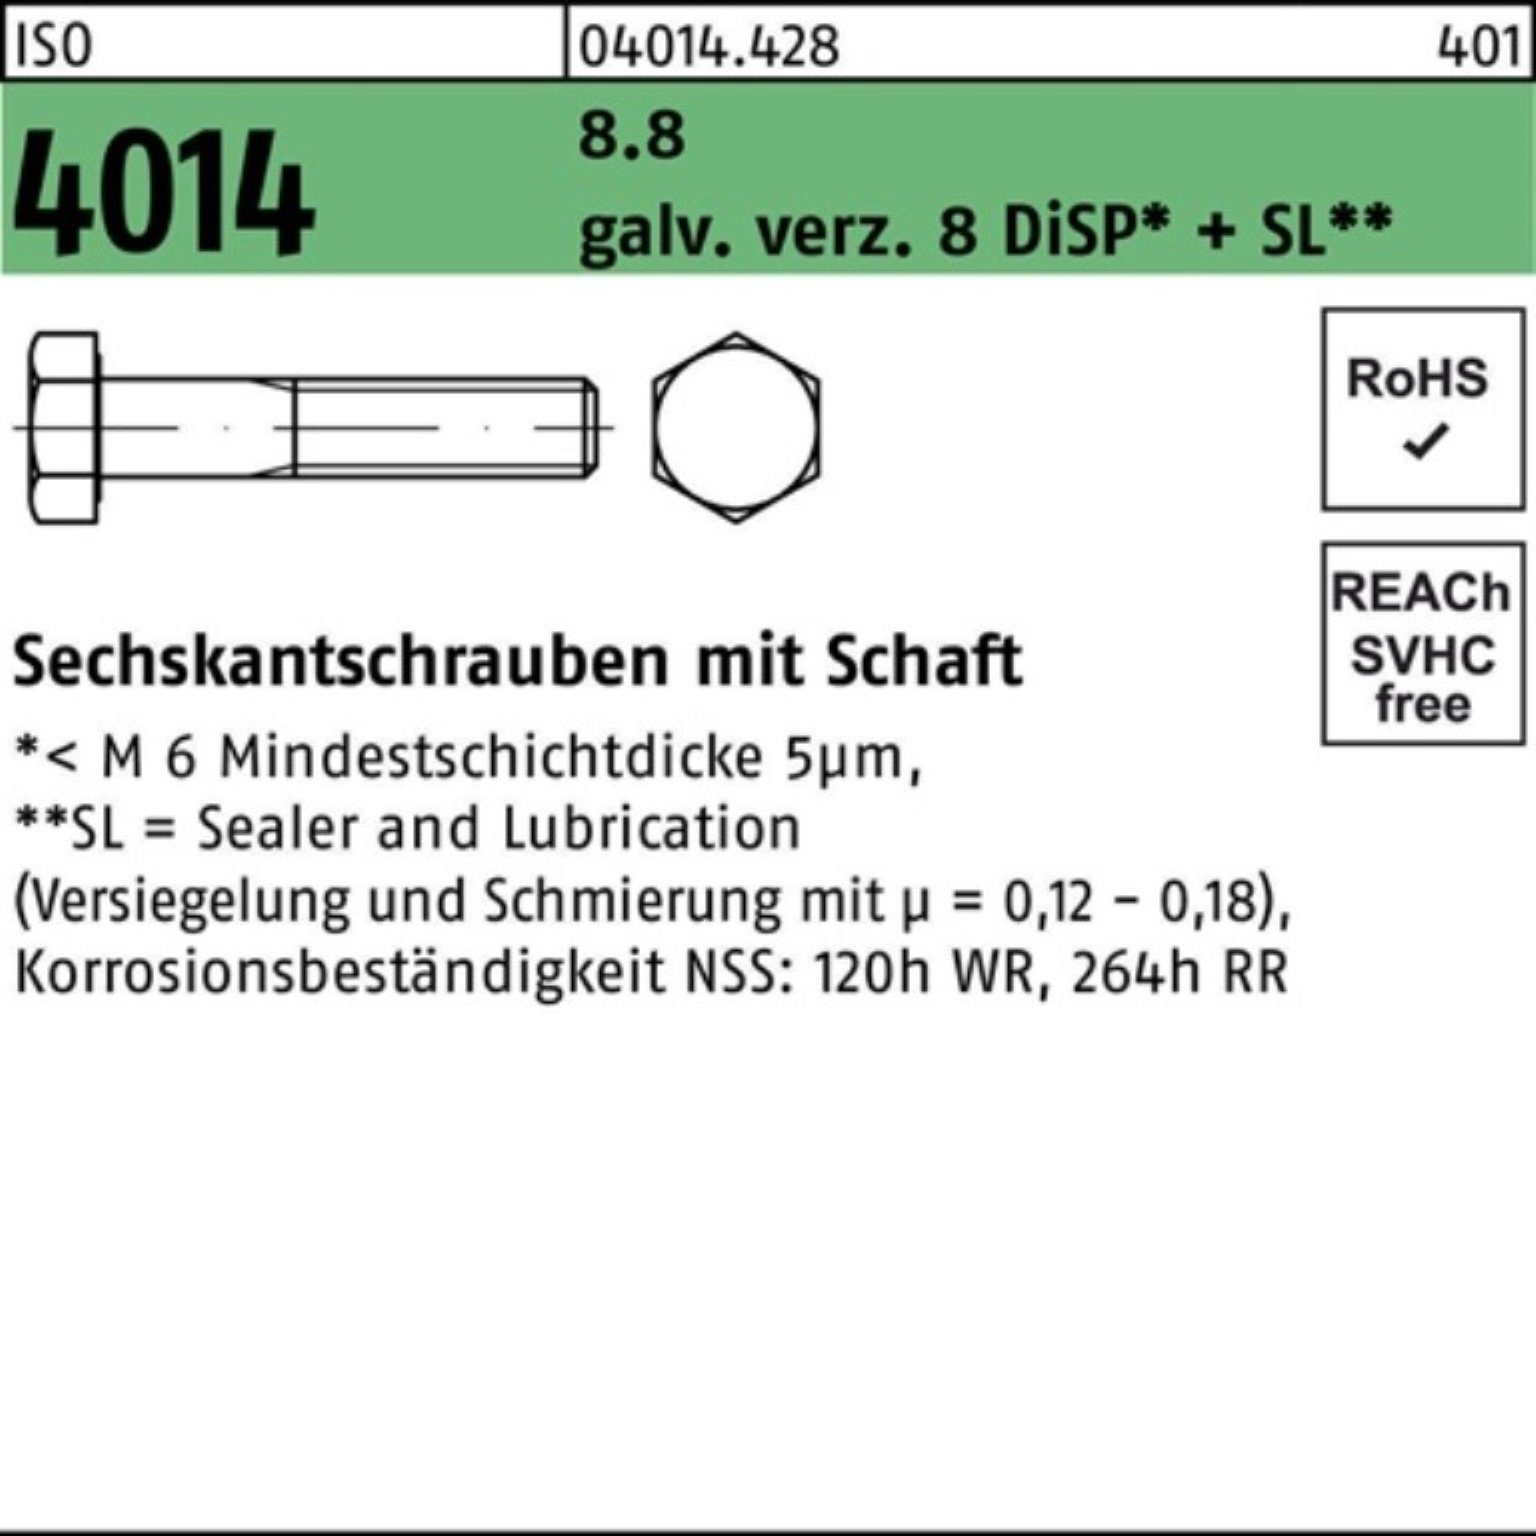 8 Sechskantschraube Schaft Sechskantschraube 8.8 Bufab 100er M14x220 Pack ISO galv.verz. 4014